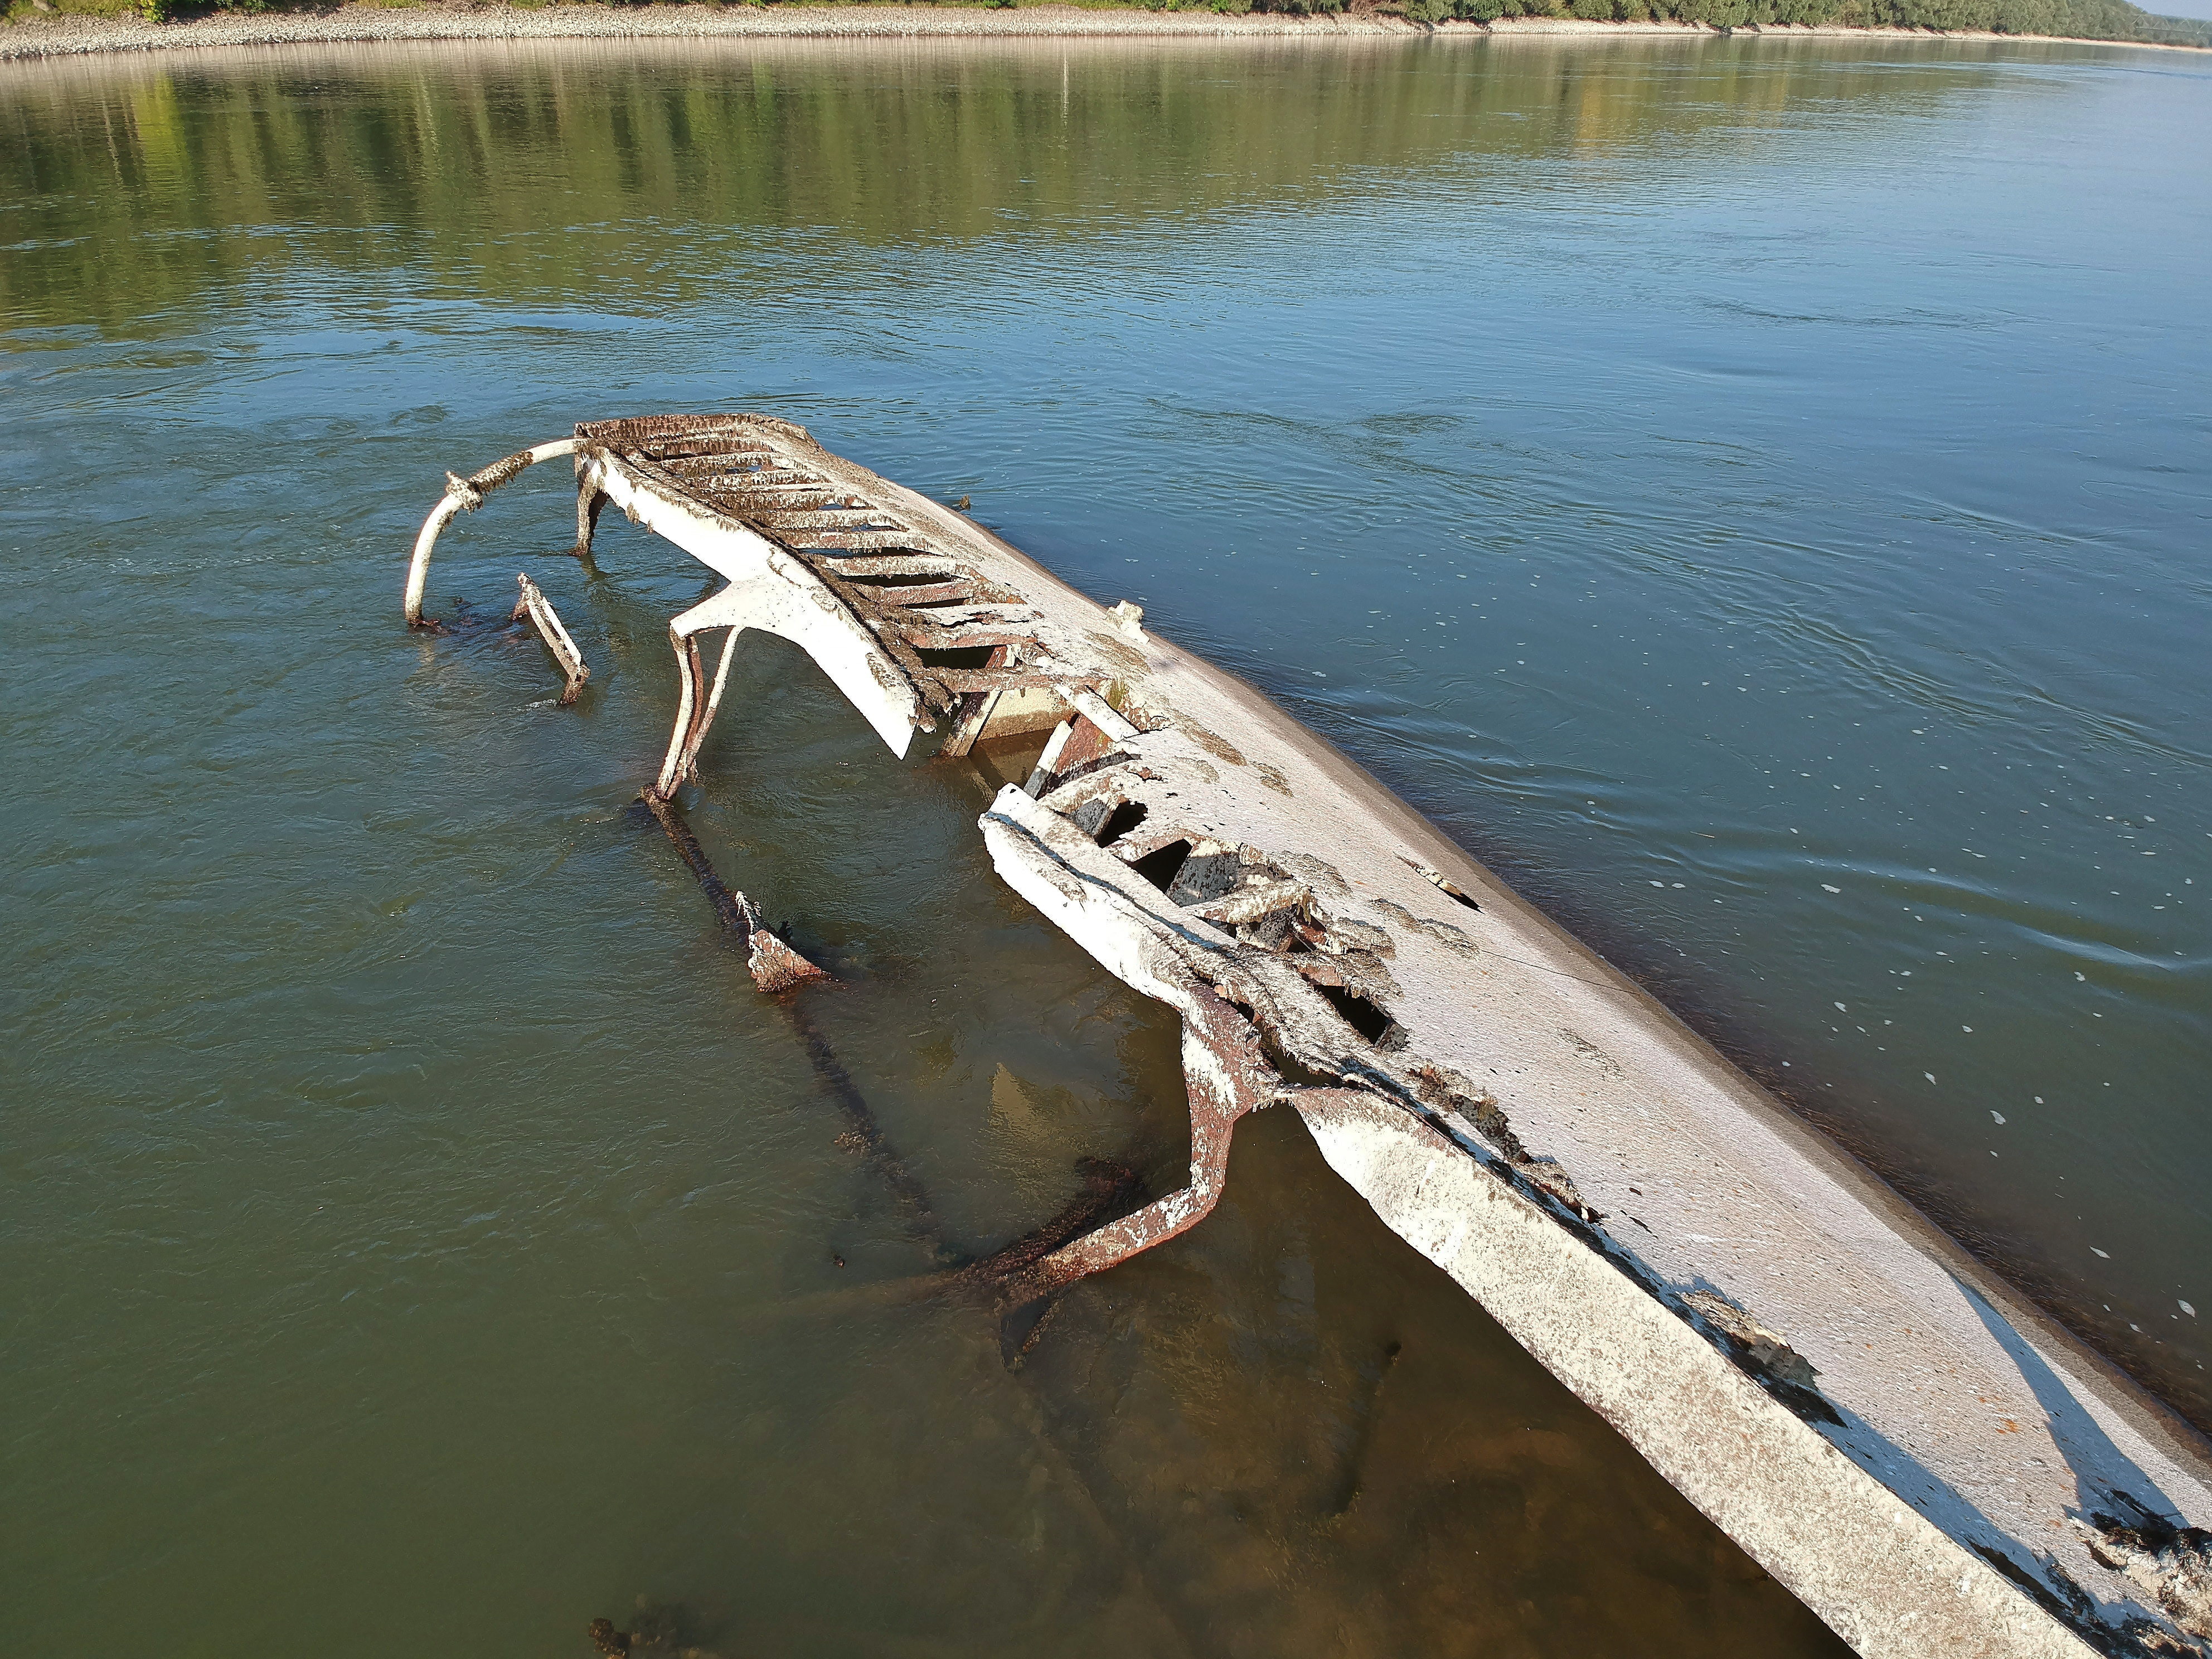 <p>Останките на кораб, потънал по време на Втората световна война, се разкриват от необичайно ниското ниво на водата на река Дунав близо до Vamosszabadi, северозападна Унгария</p>